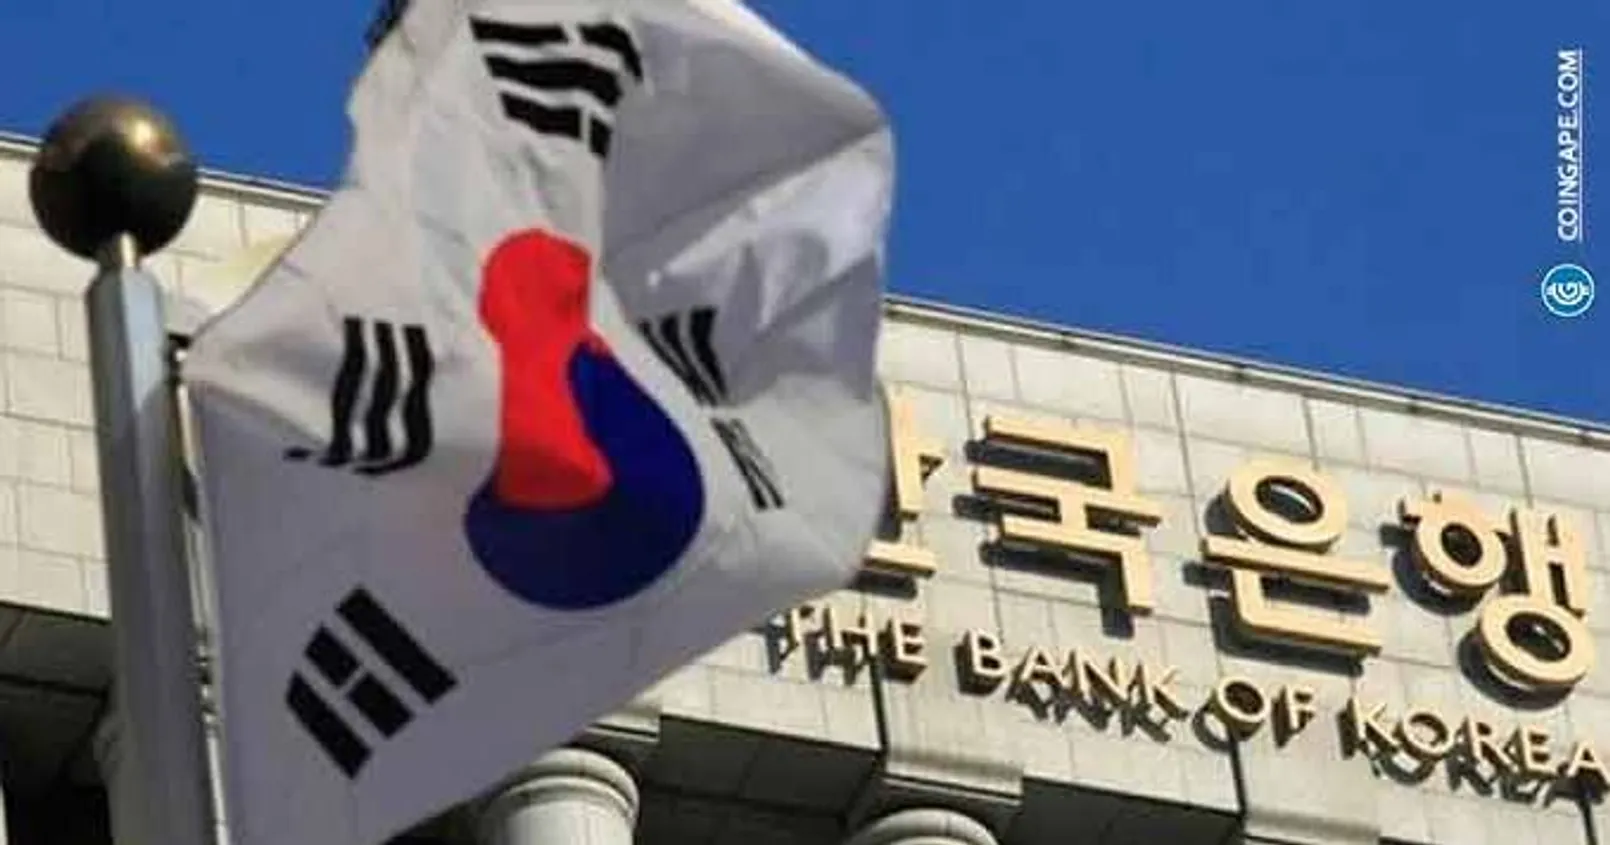 Bank of Korea 678x356 1.jpg